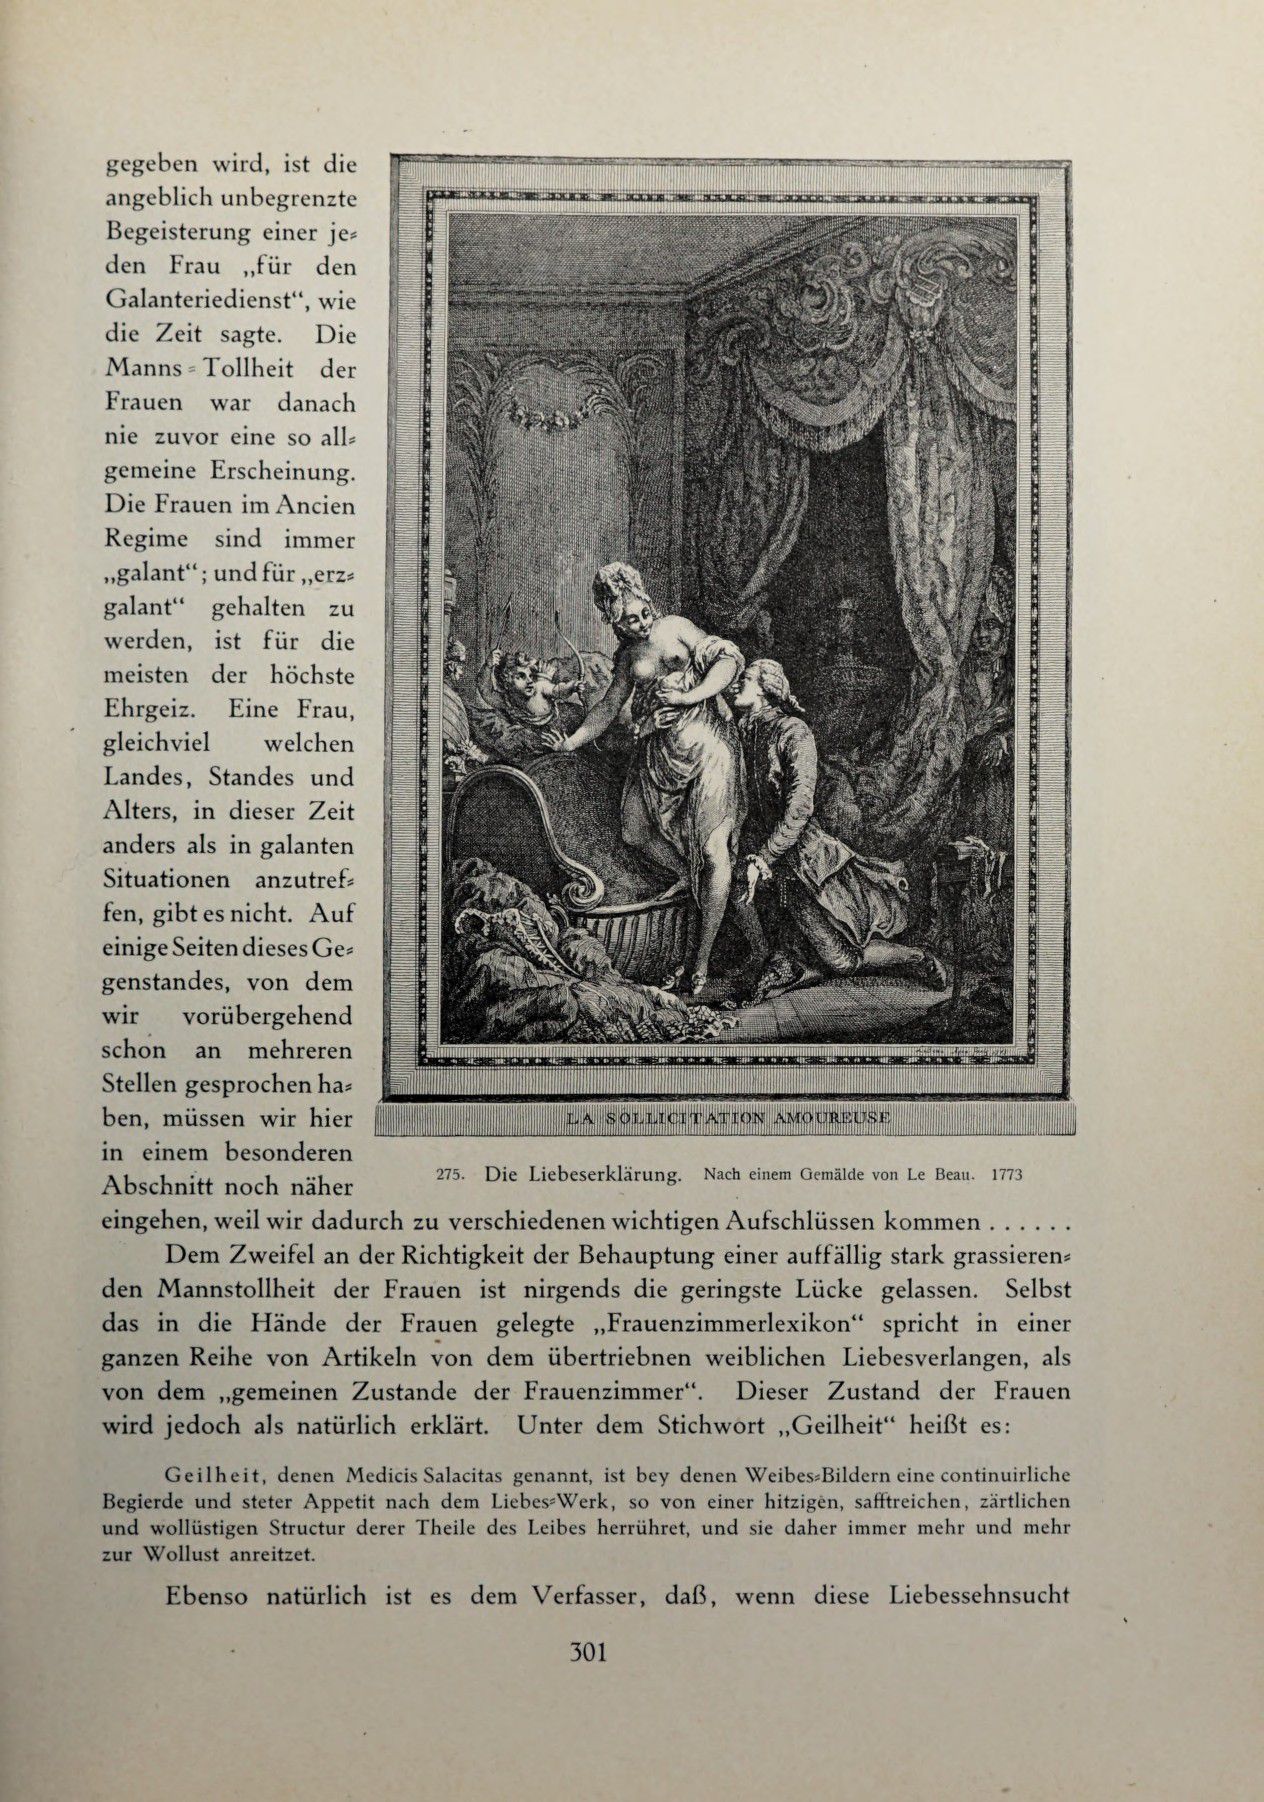 [Eduard Fuchs] Illustrierte Sittengeschichte vom Mittelalter bis zur Gegenwart: Bd. 2. and Ergänzungsband. Die galante Zeit [German] 440